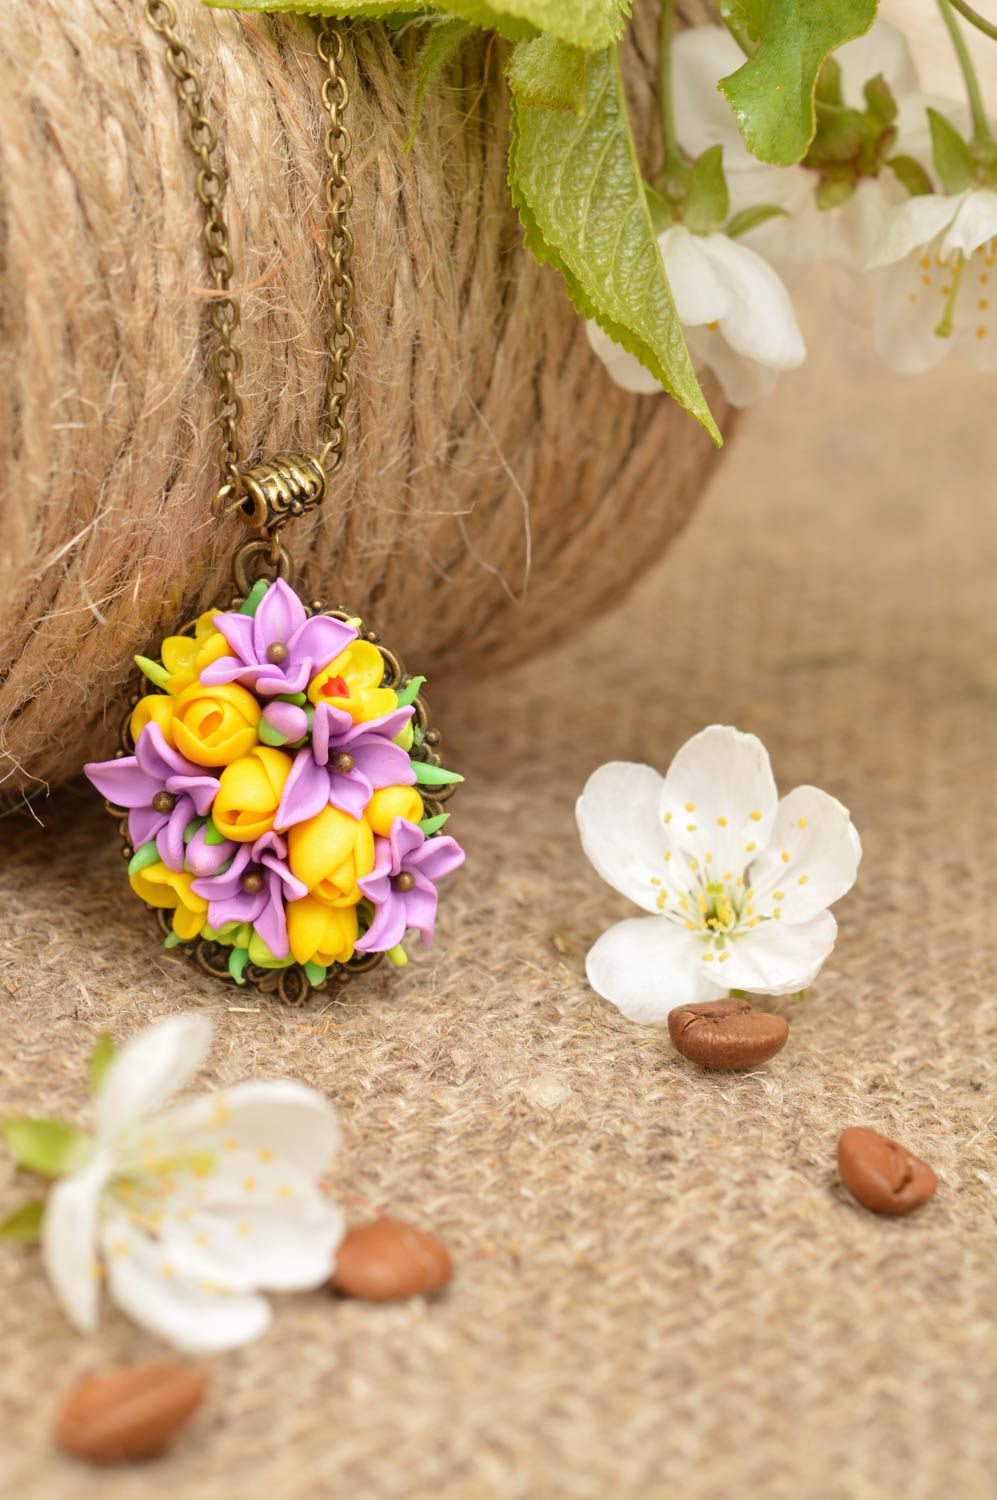 Colgante con flores de arcilla polimérica con cadena metálica artesanal  foto 1